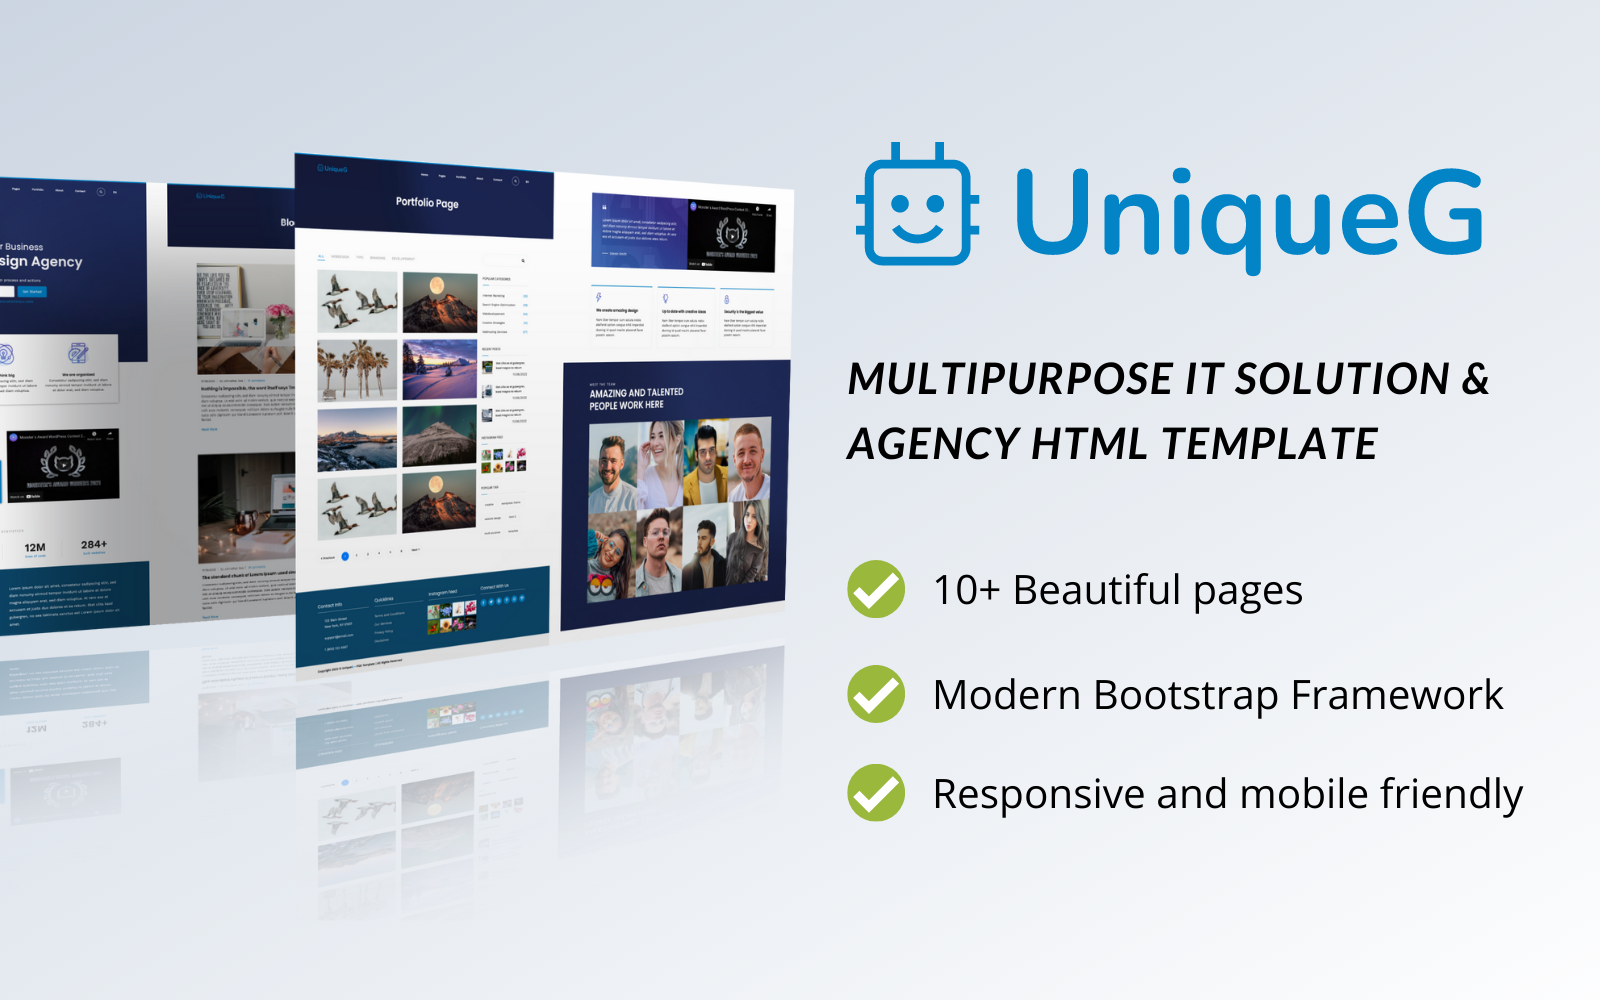 UniqueG — uniwersalne rozwiązanie IT i szablon HTML dla agencji